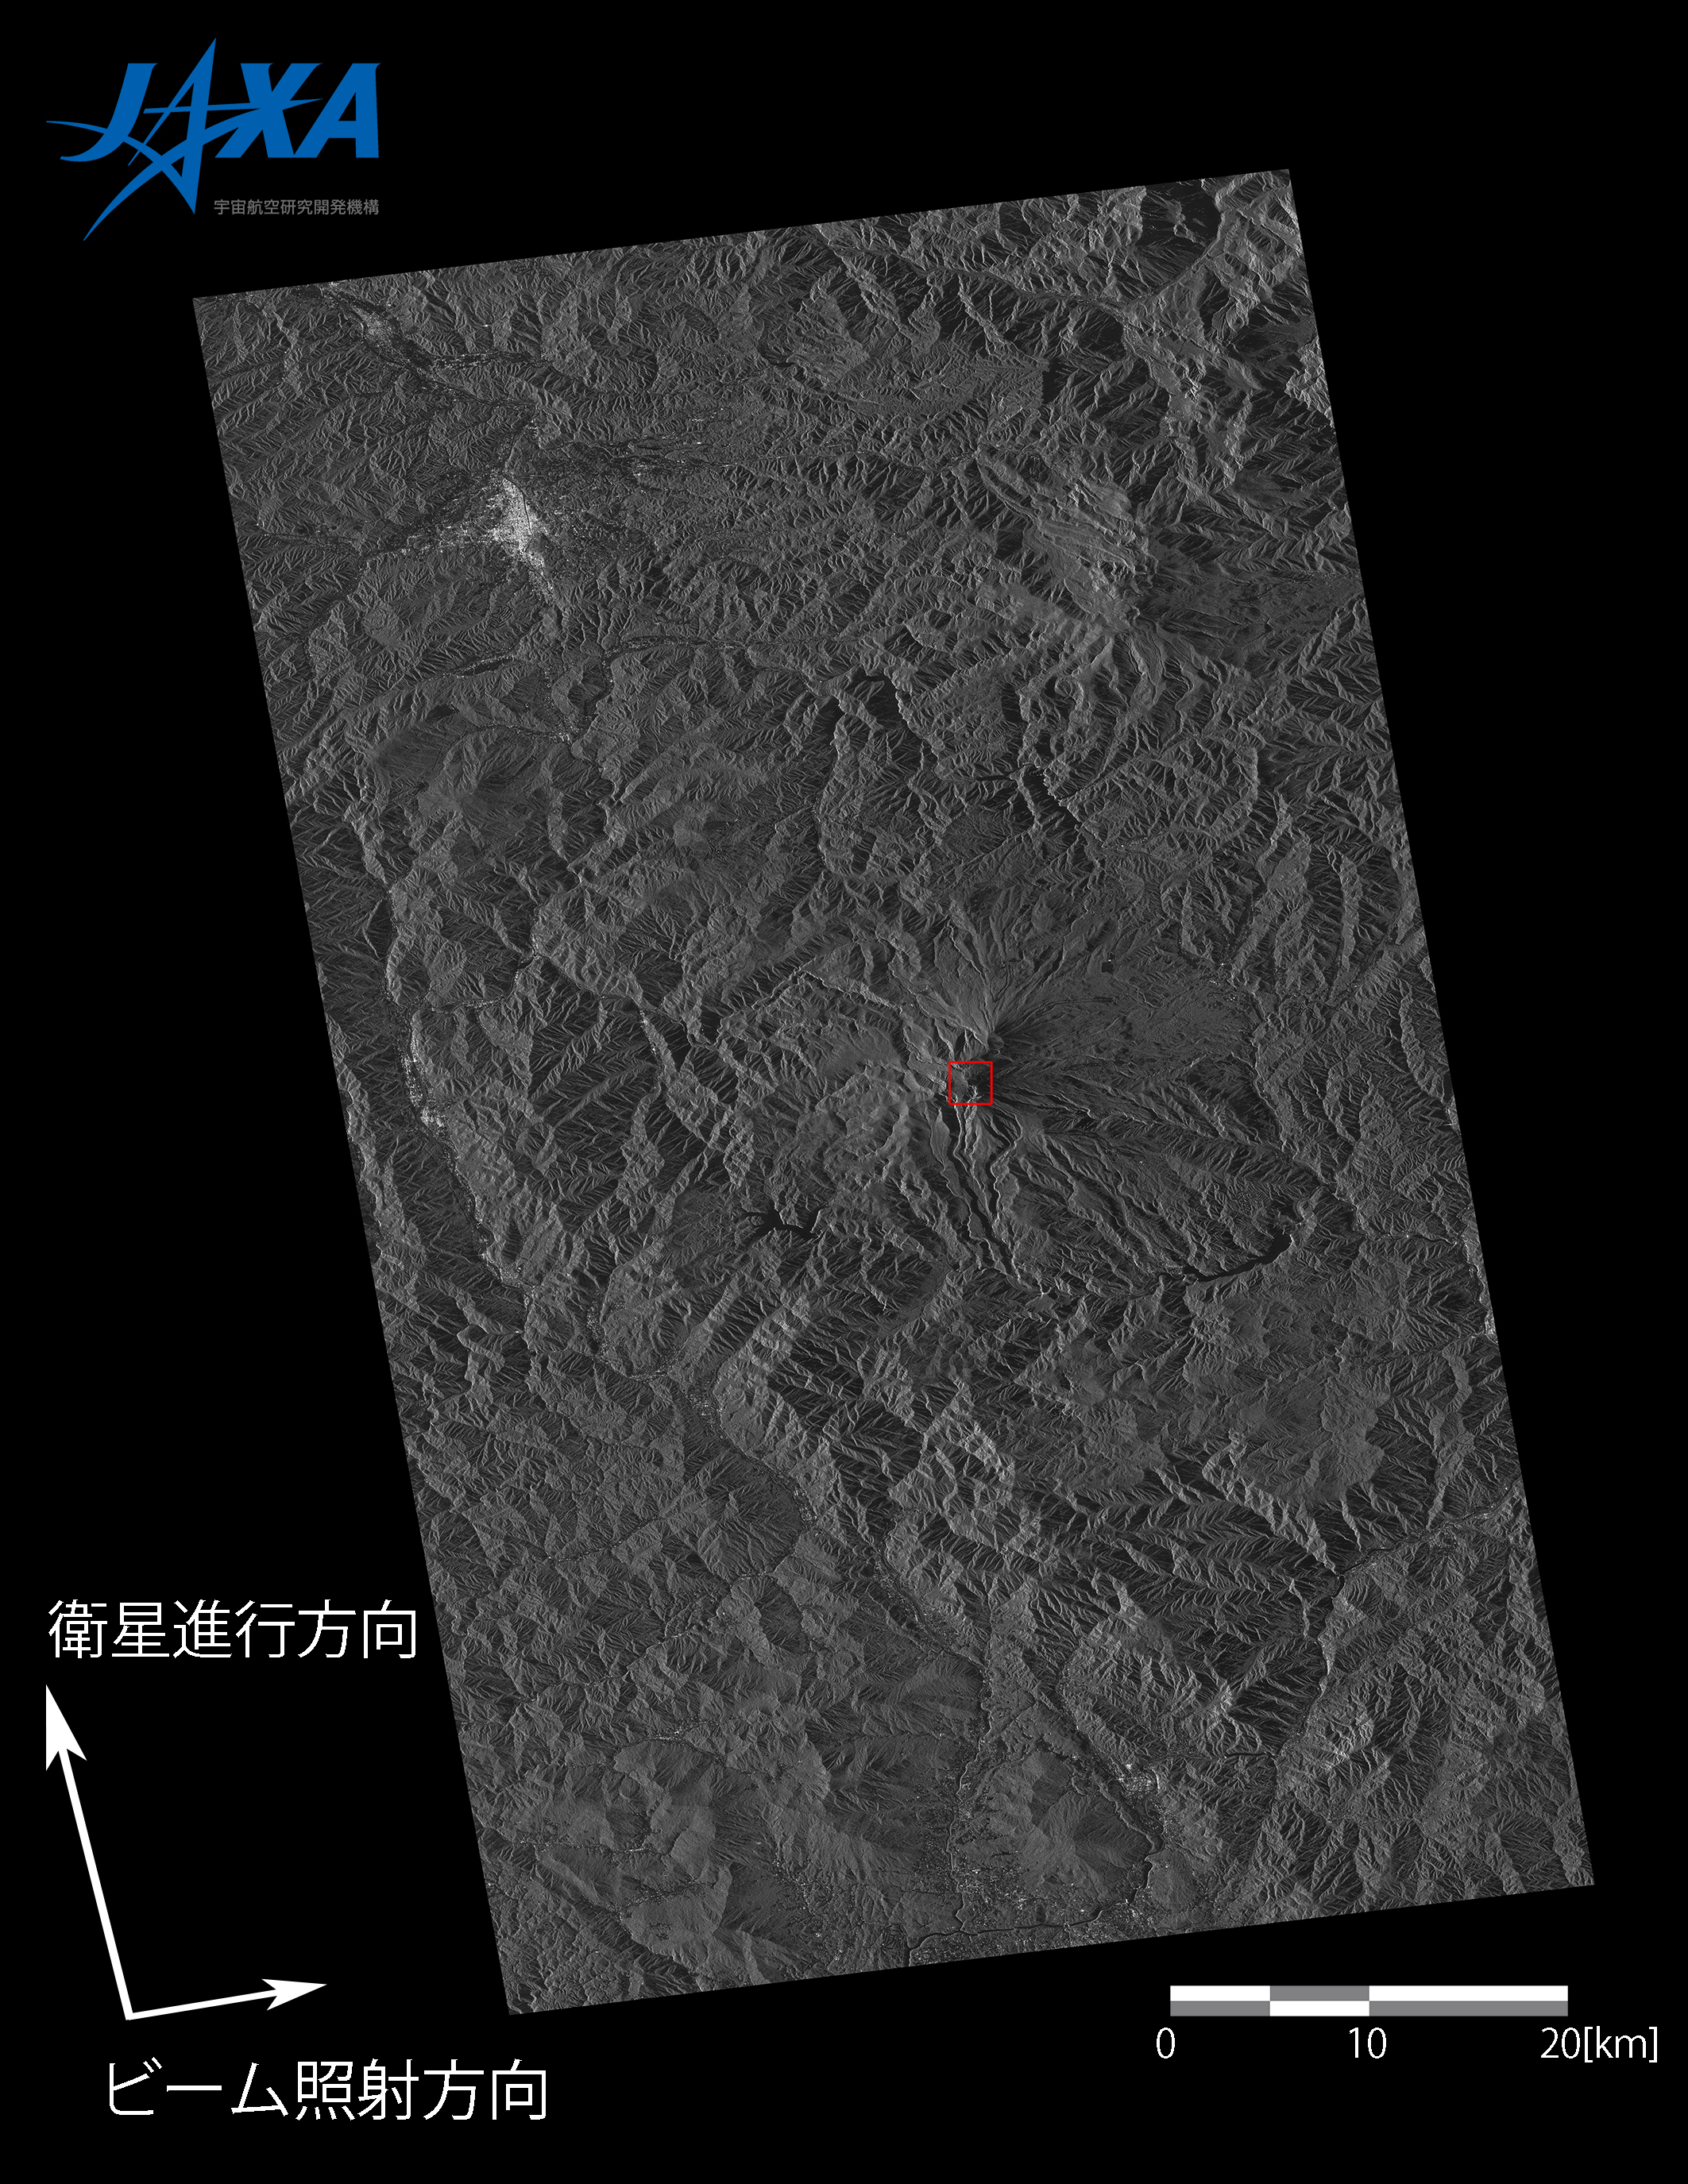 図2: 2014年9月29日23時59分頃に御嶽山付近を観測したPALSAR-2の高分解能[3m]モード (1偏波) の（入射角46°）画像。画像中央部に御嶽山。